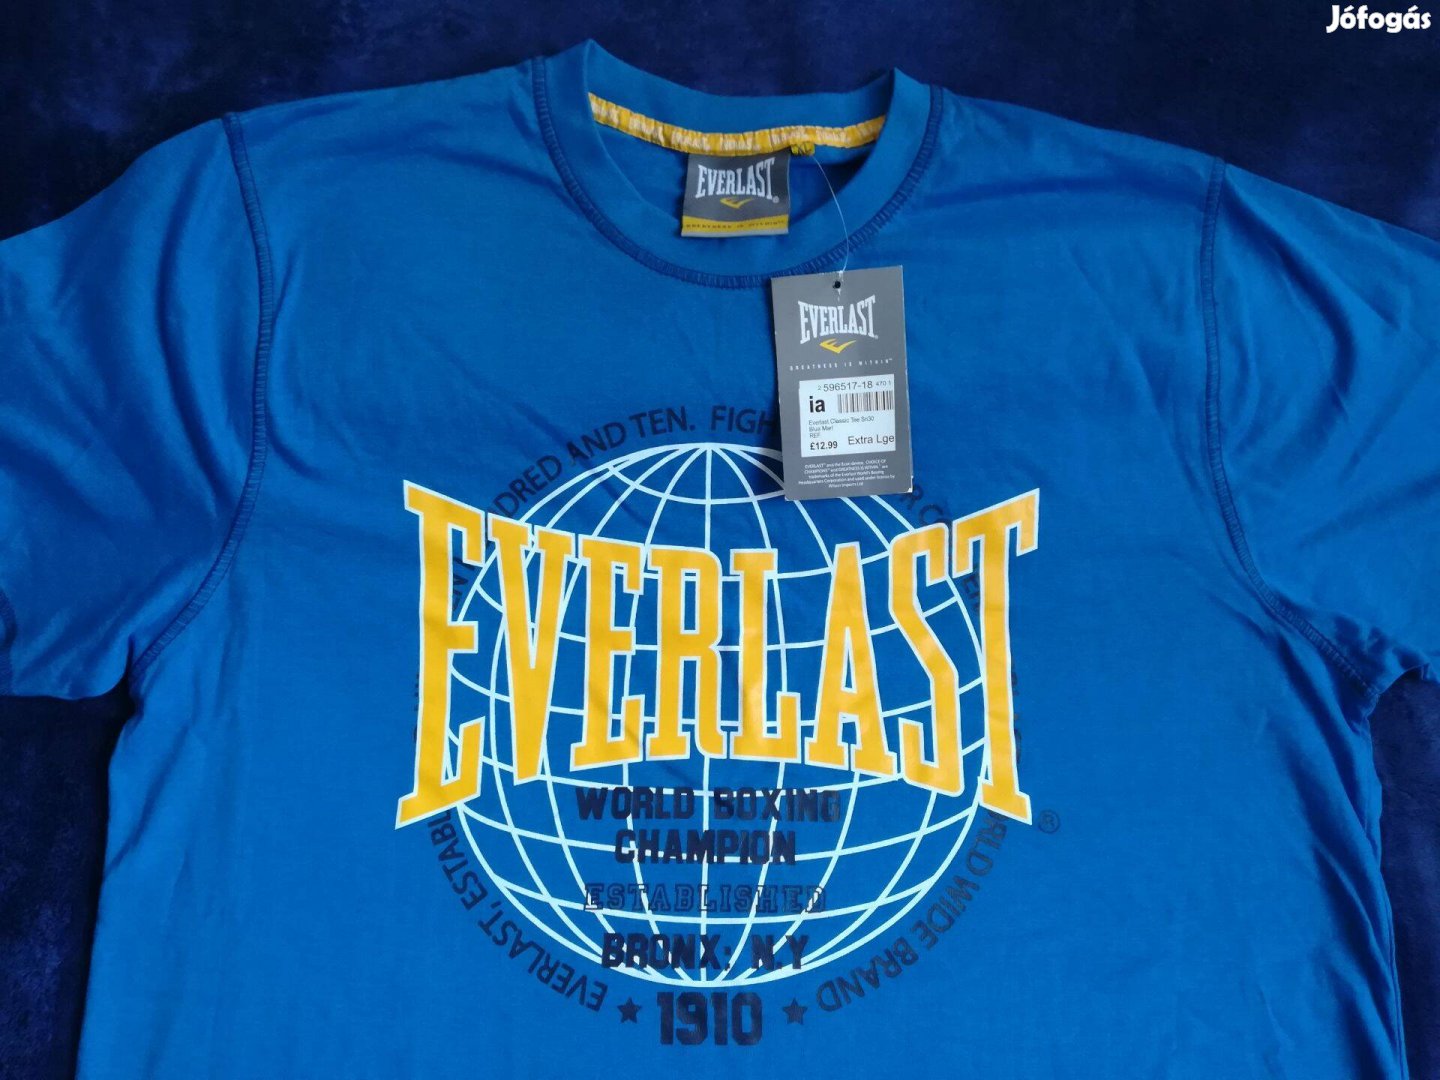 Everlast új eredeti póló eladó Hossz: 75 cm (válltól mérve) szélesség: